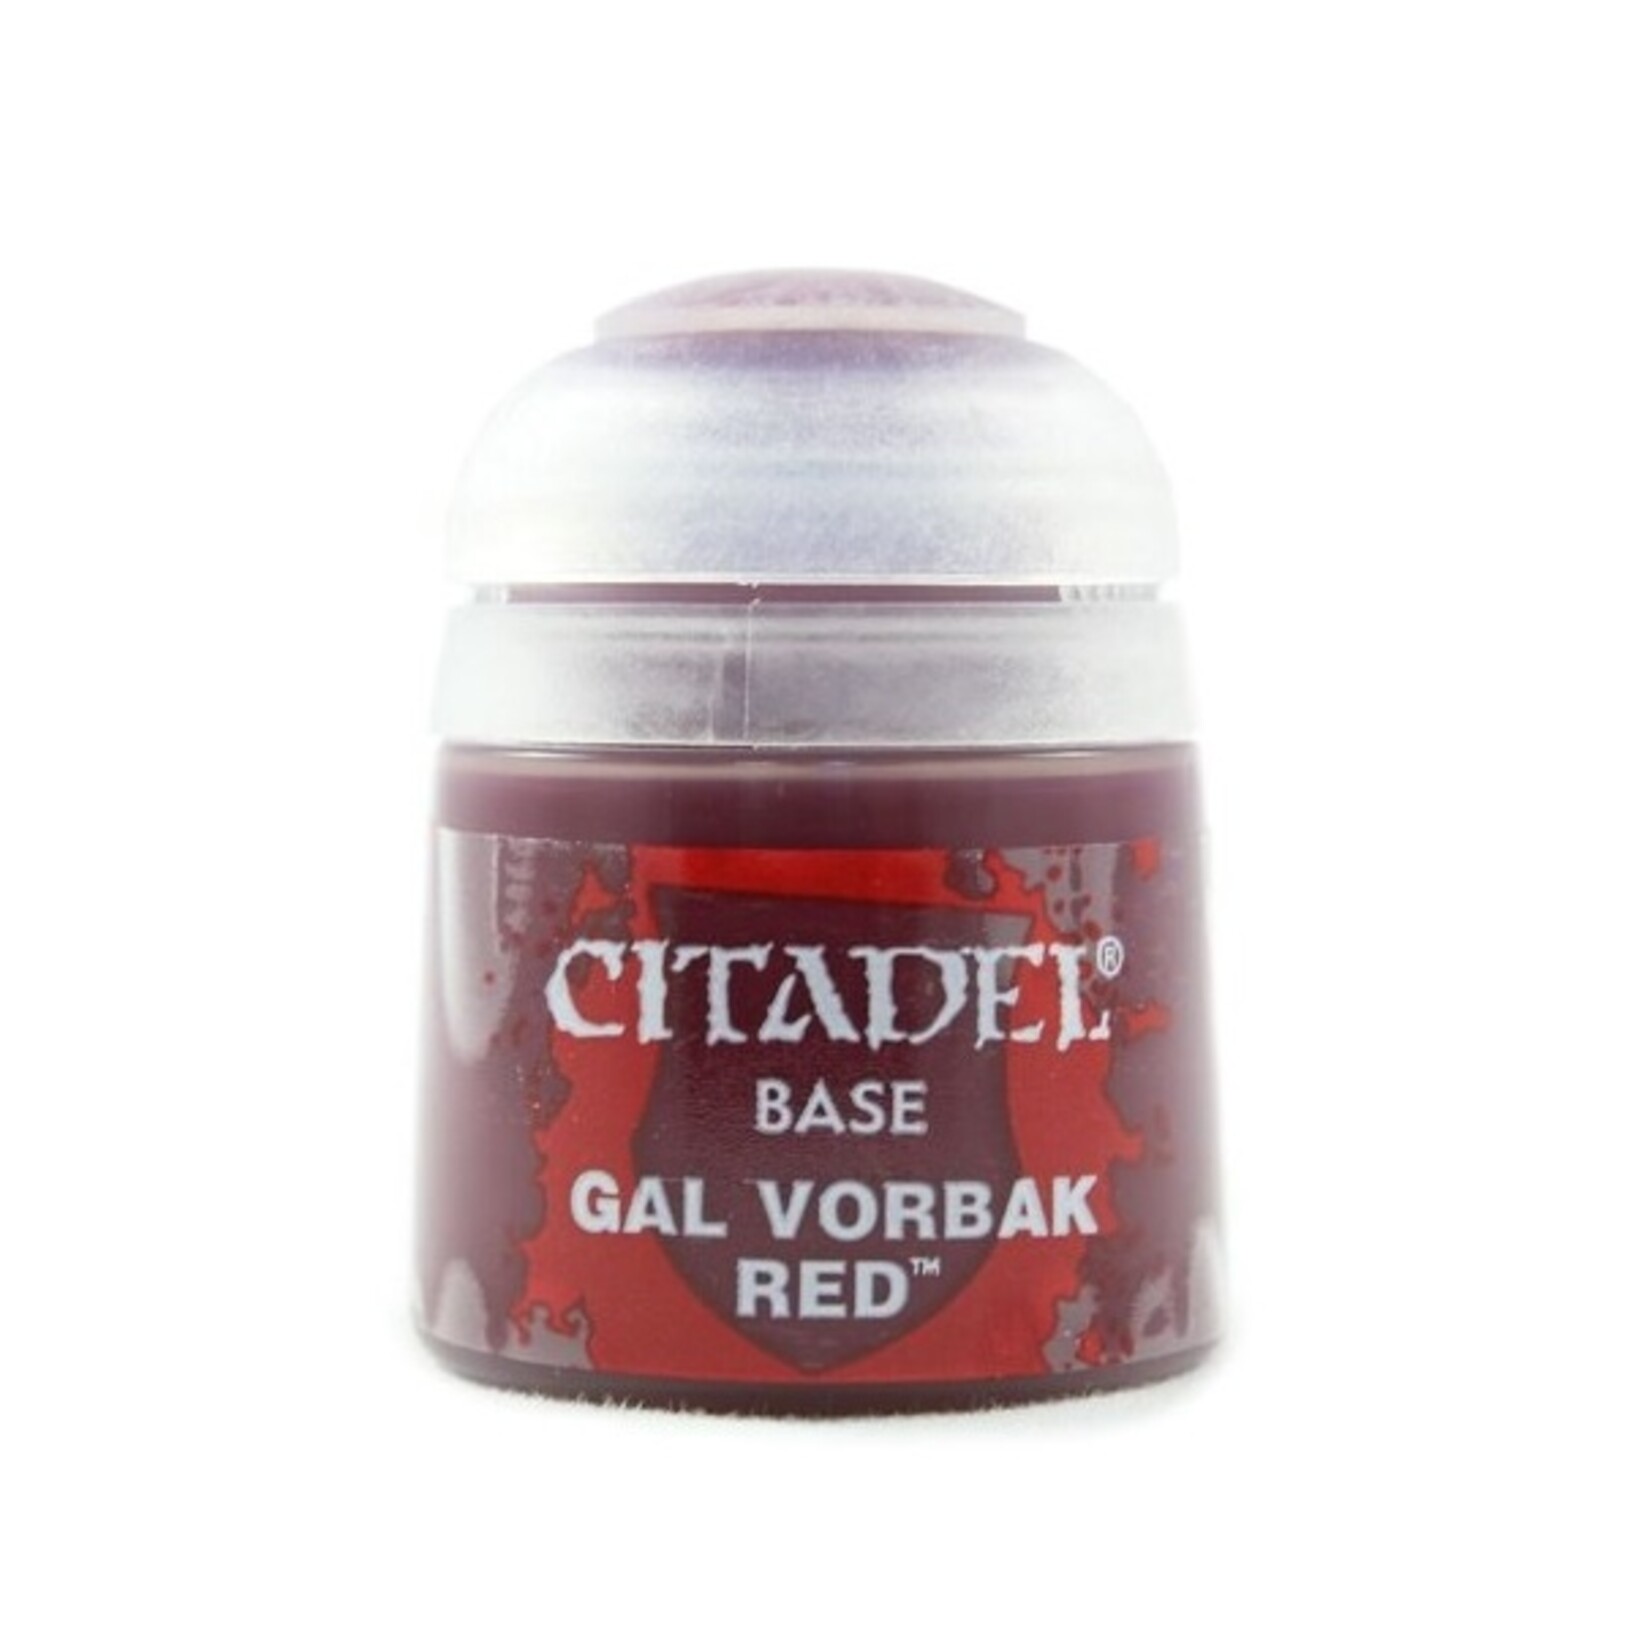 Citadel (Games Workshop) Citadel Base: Gal Vorbak Red (12ml)